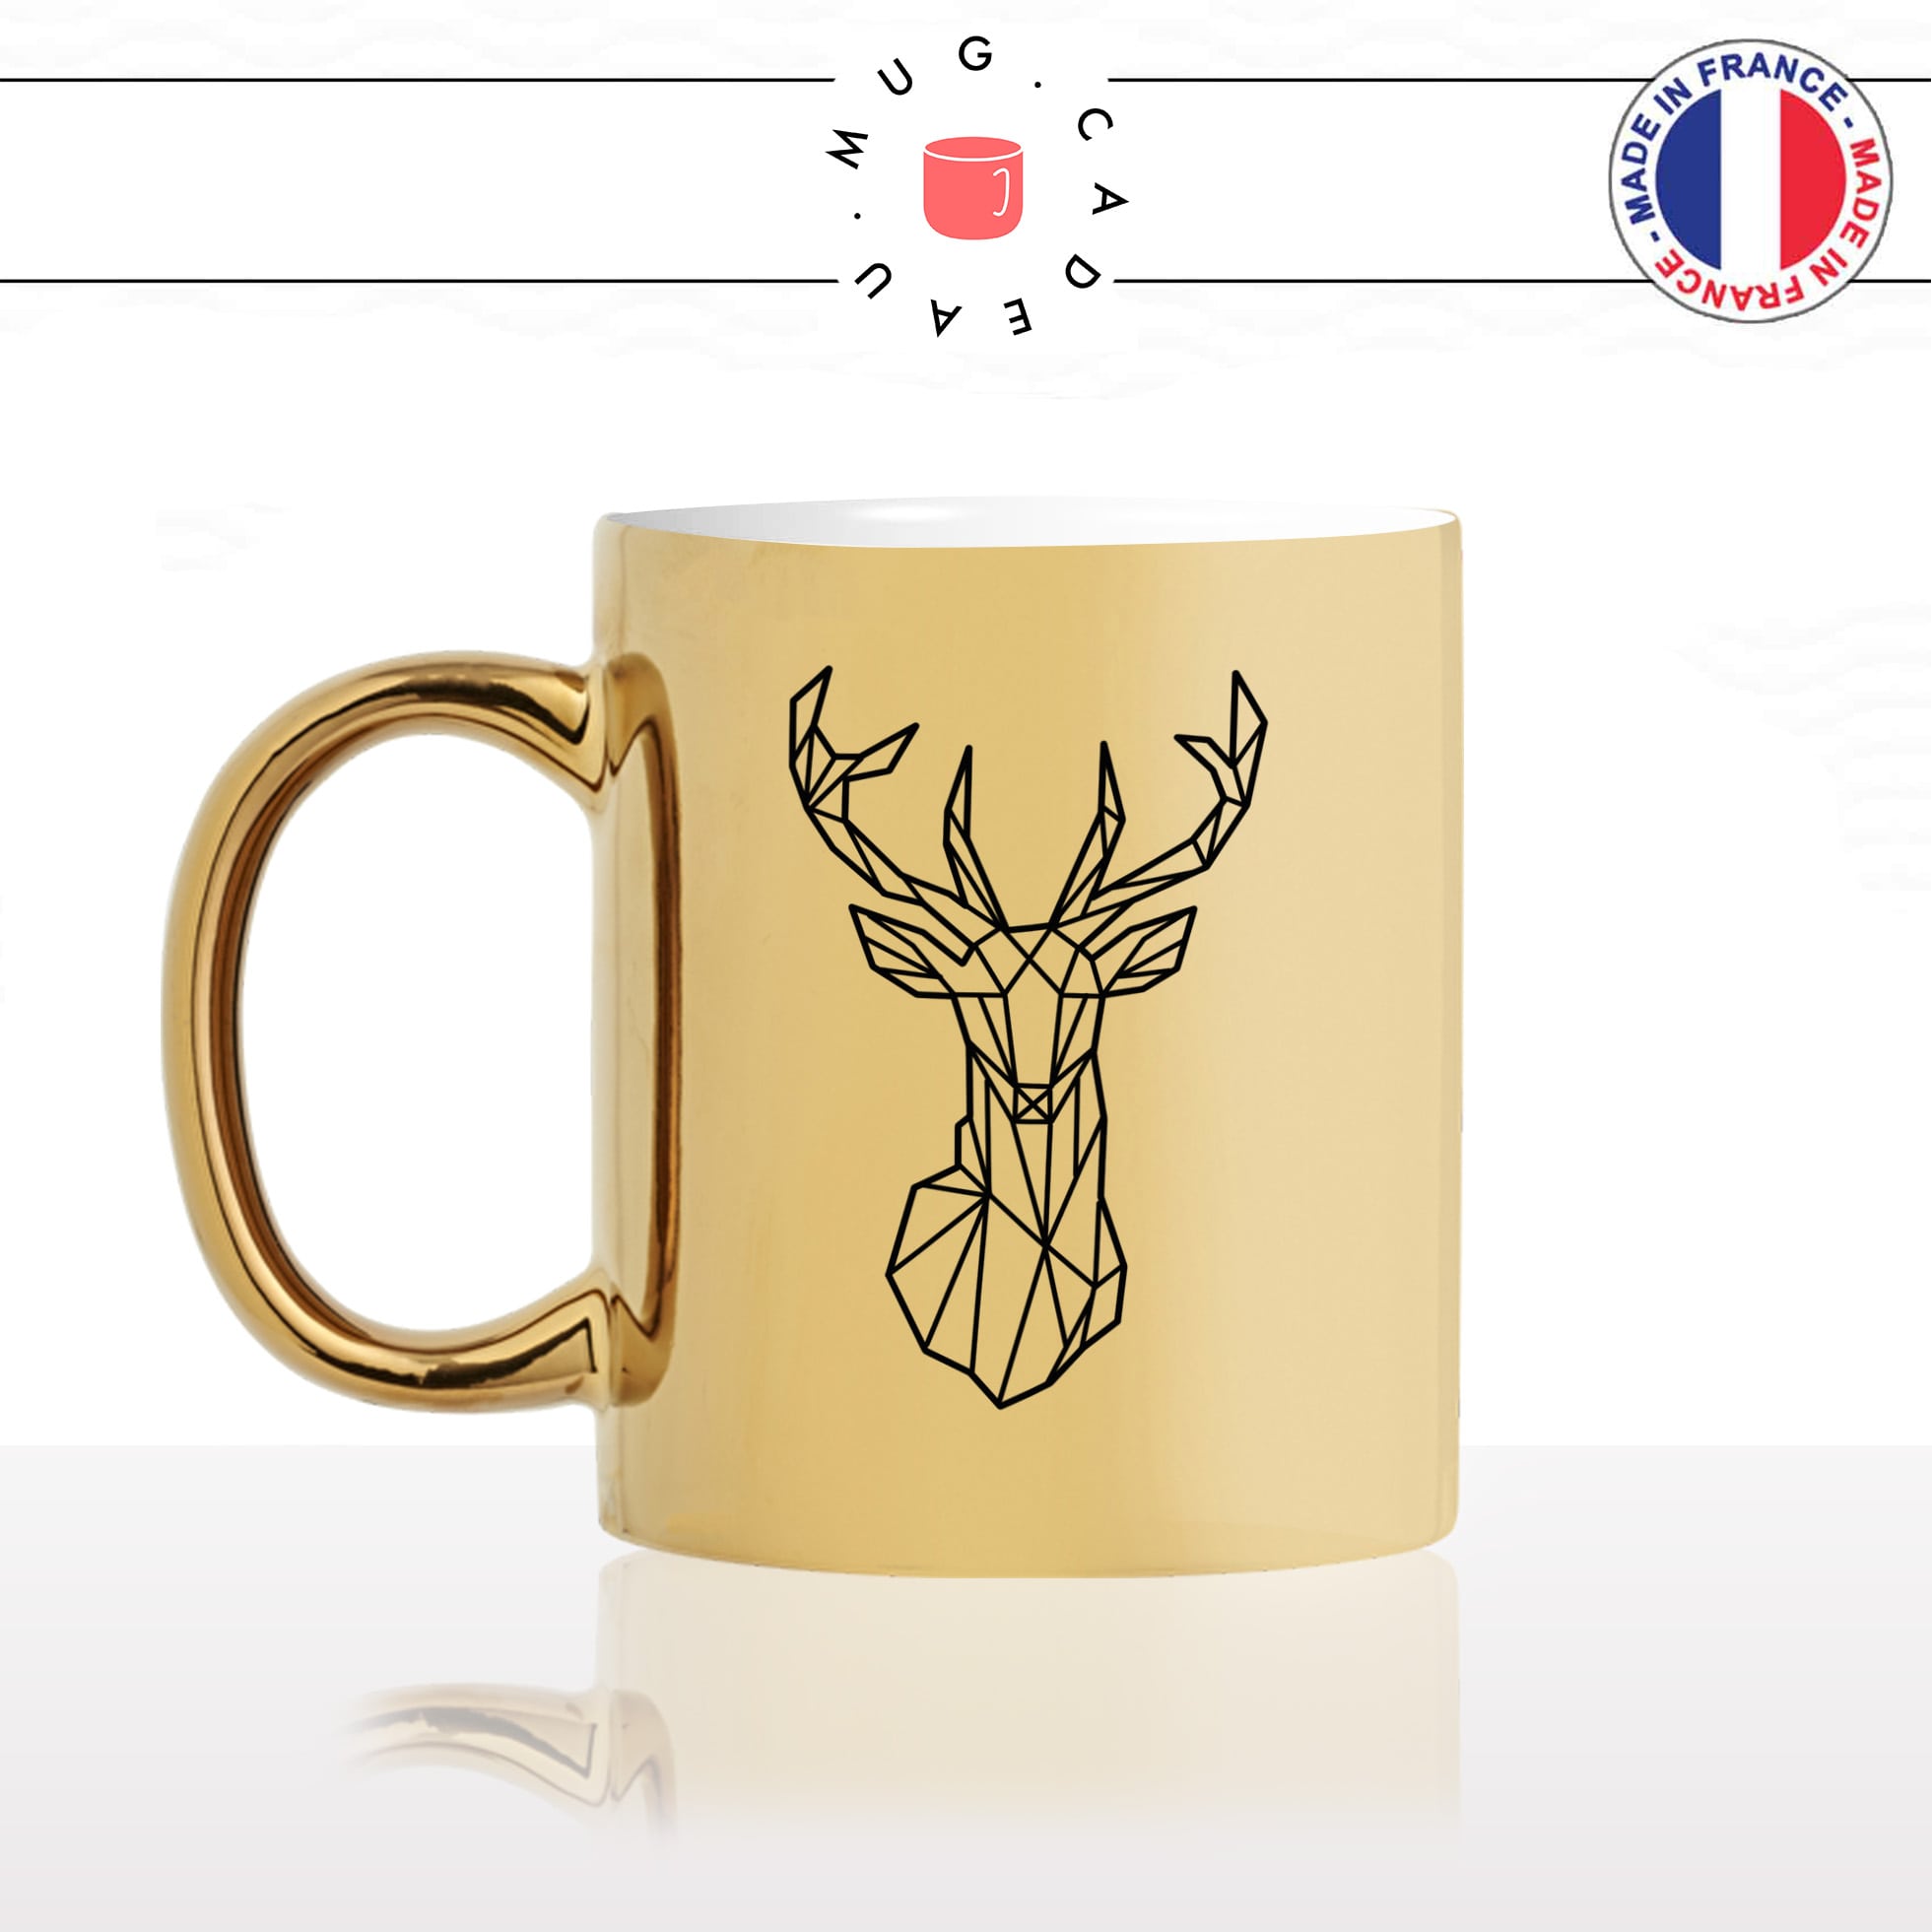 mug-tasse-or-doré-cerf-origami-animal-bois-biche-dessin-noir-fun-café-thé-idée-cadeau-original-personnalisable-gold-min